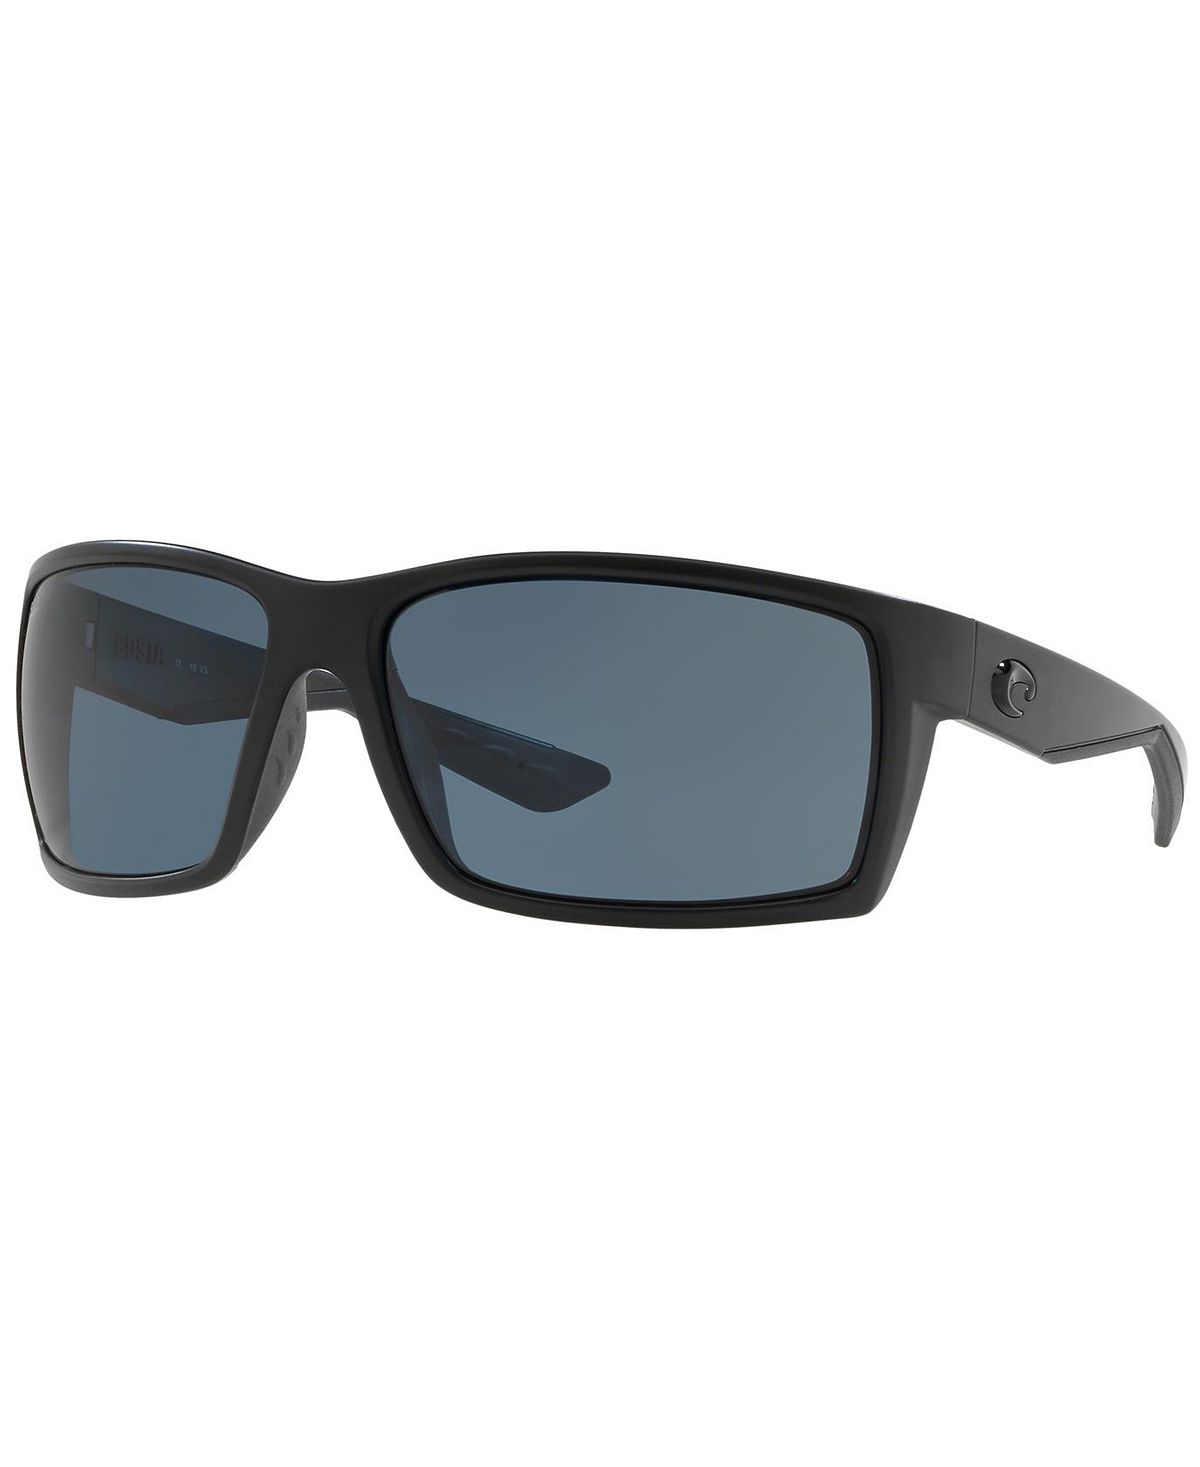 Поляризационные солнцезащитные очки, REEFTON 64 Costa Del Mar